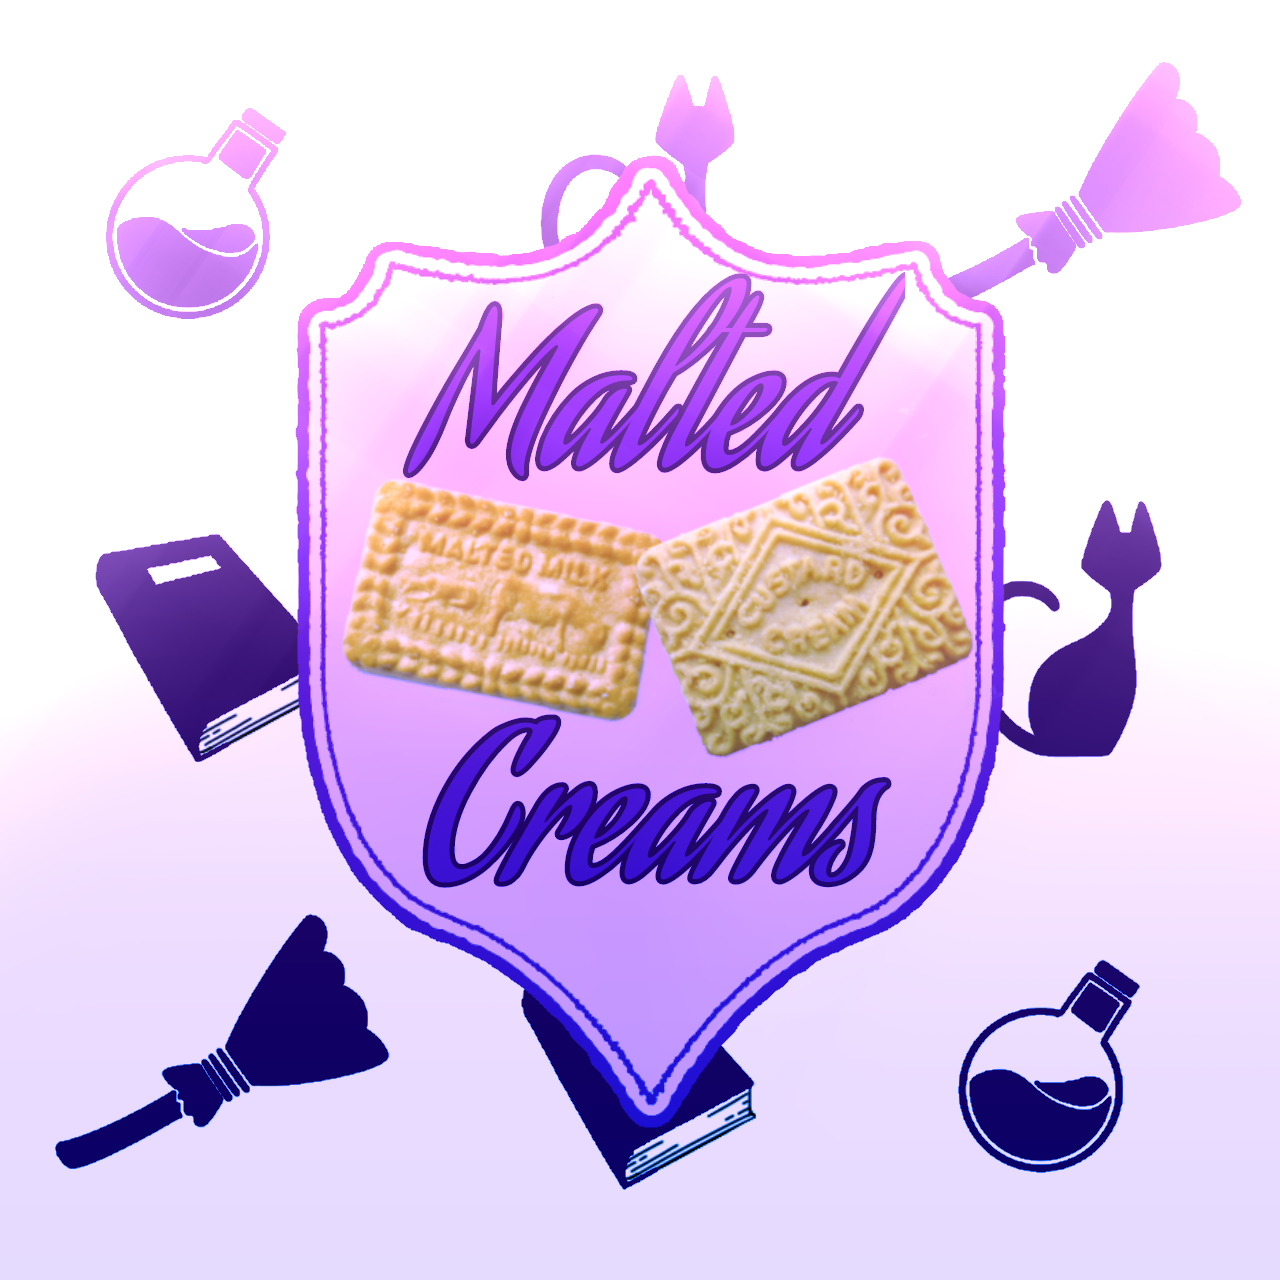 Malted Creams